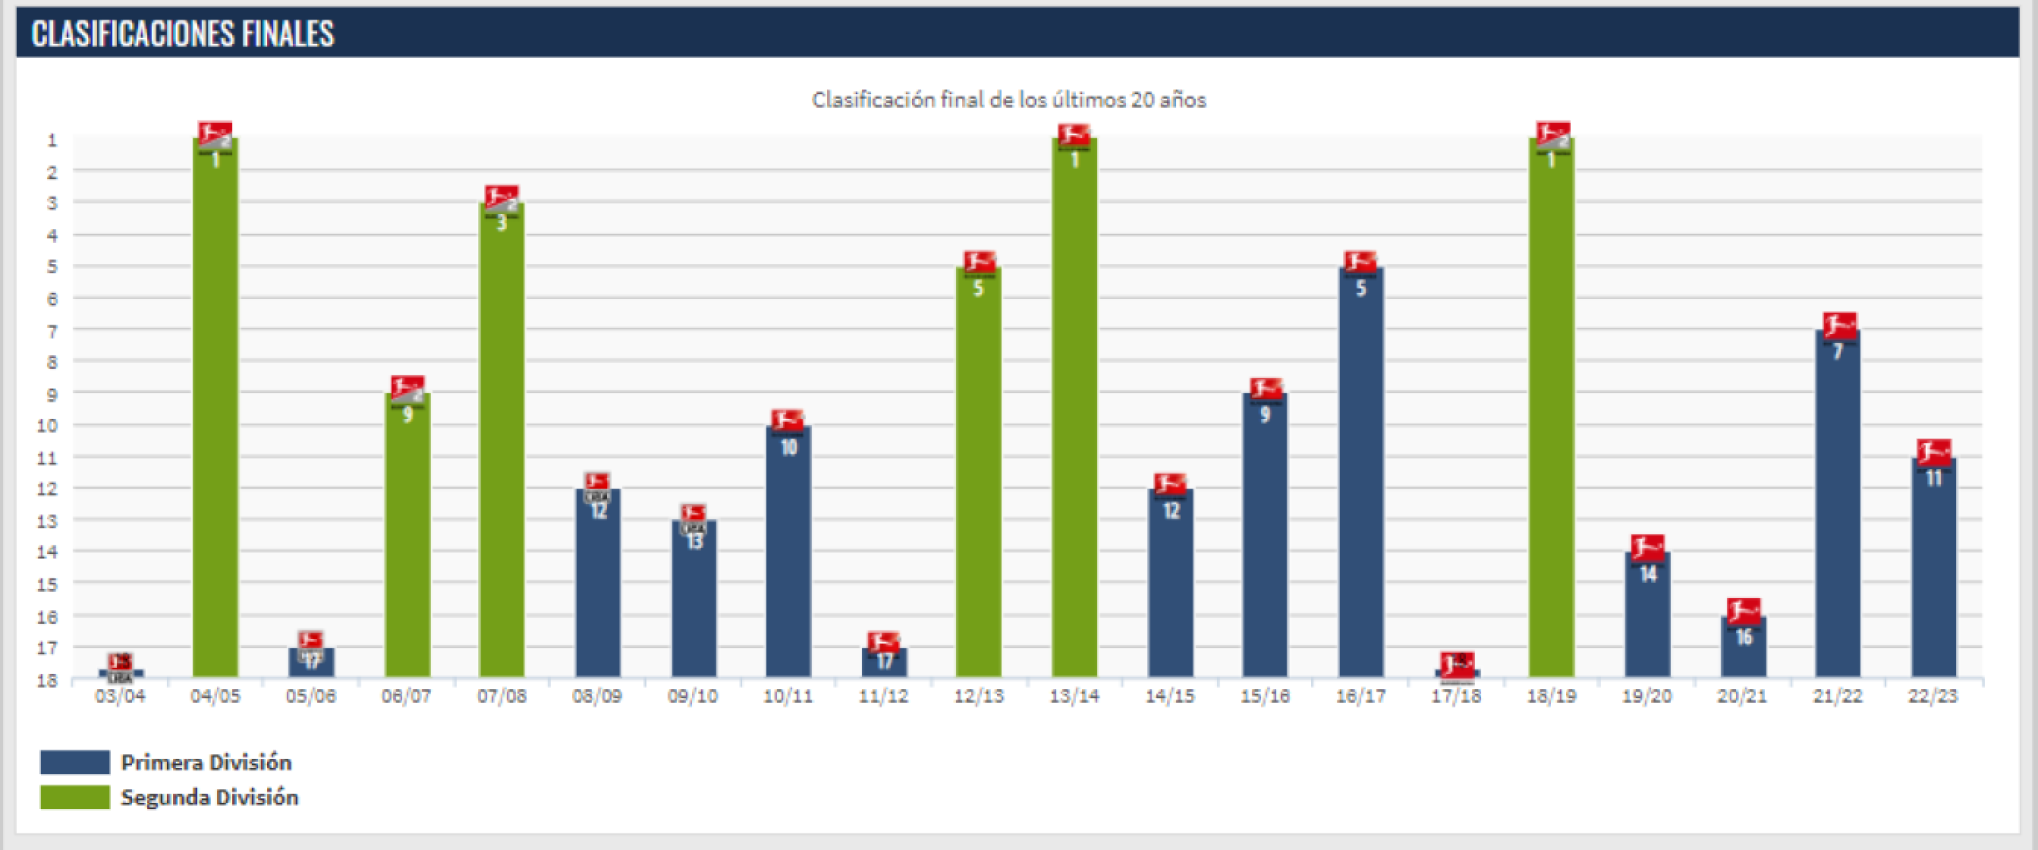 El rendimiento del Köln en las últimas 20 temporadas, con sus picos y valles. / Fuente: TransferMarkt.